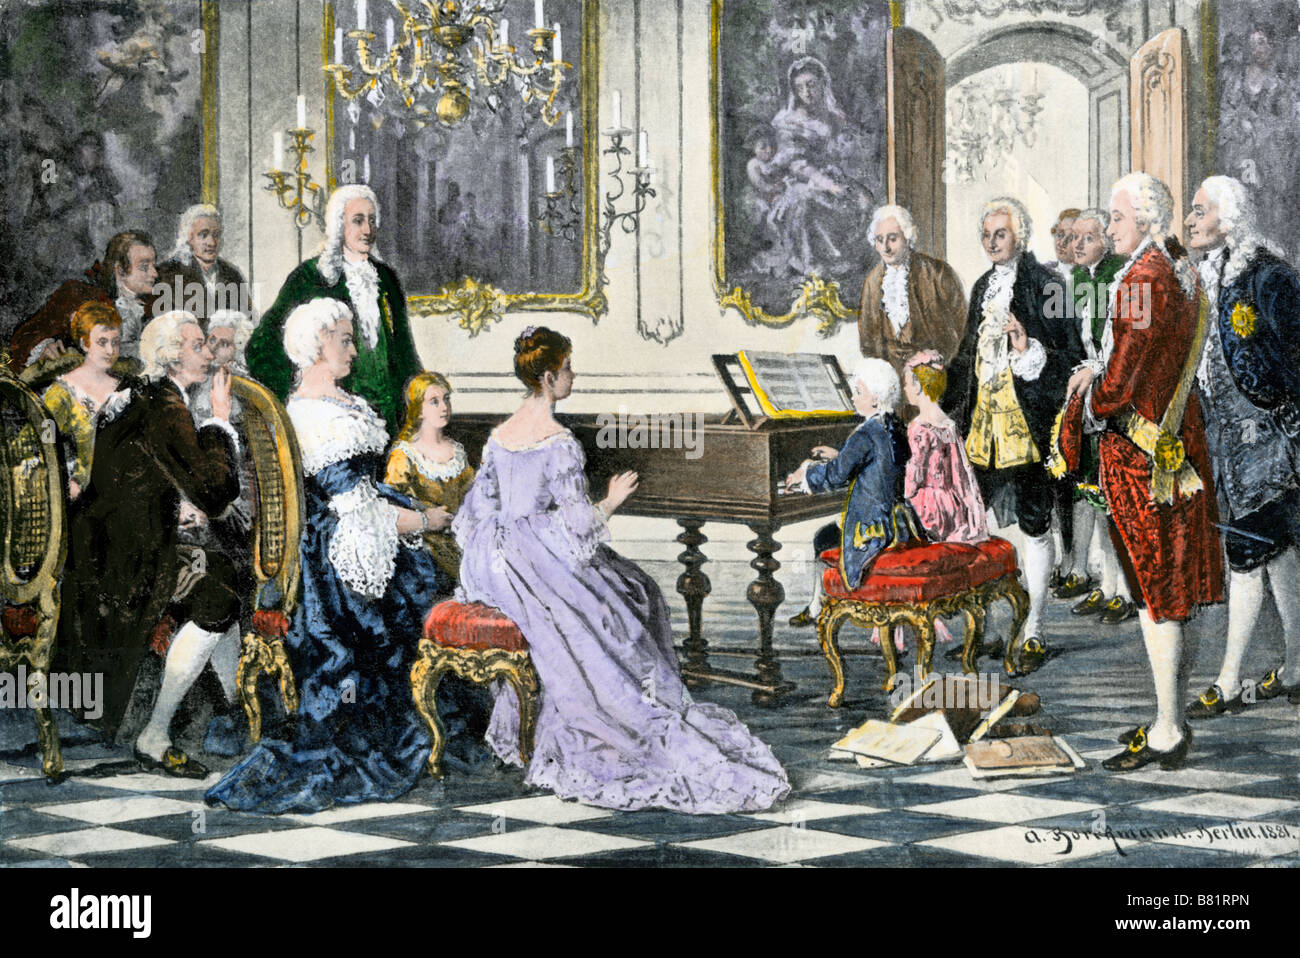 Junge Mozart und seine Schwester spielen ein Duett für Kaiserin Maria Theresia von Österreich. Handcolorierte halftone einer Abbildung Stockfoto